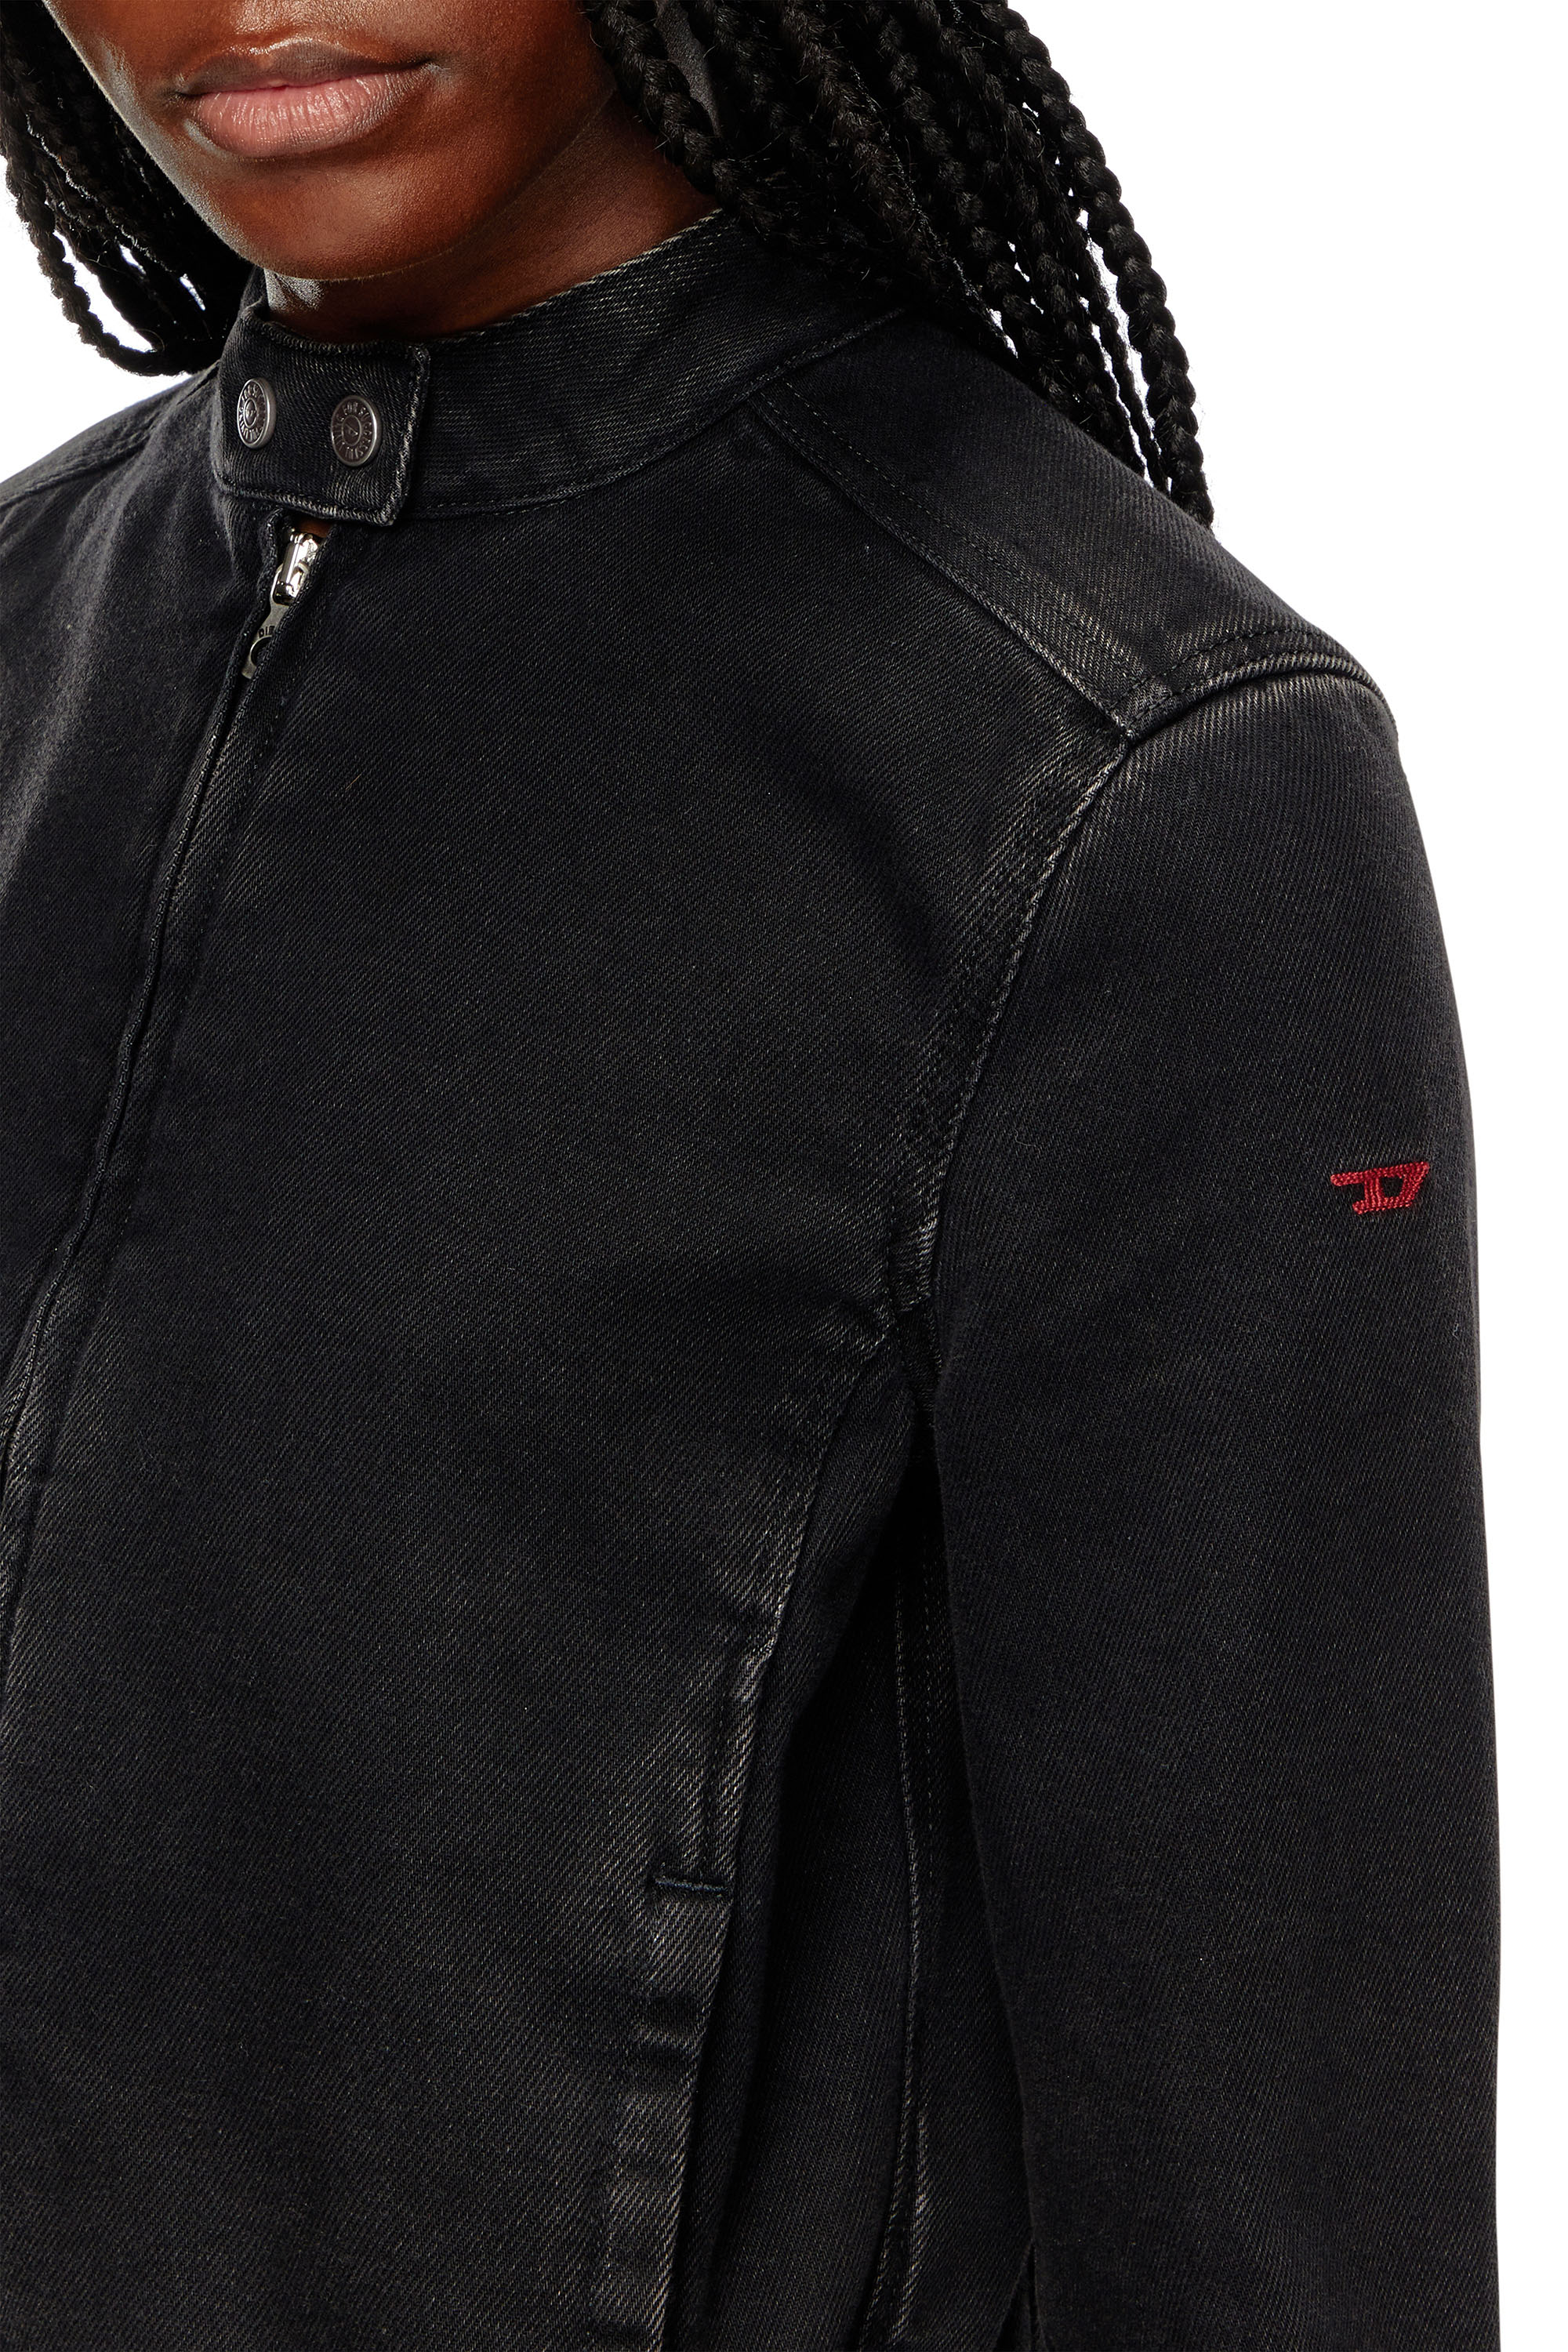 Diesel - DE-MORNIN, Woman Moto jacket in denim in Black - Image 3